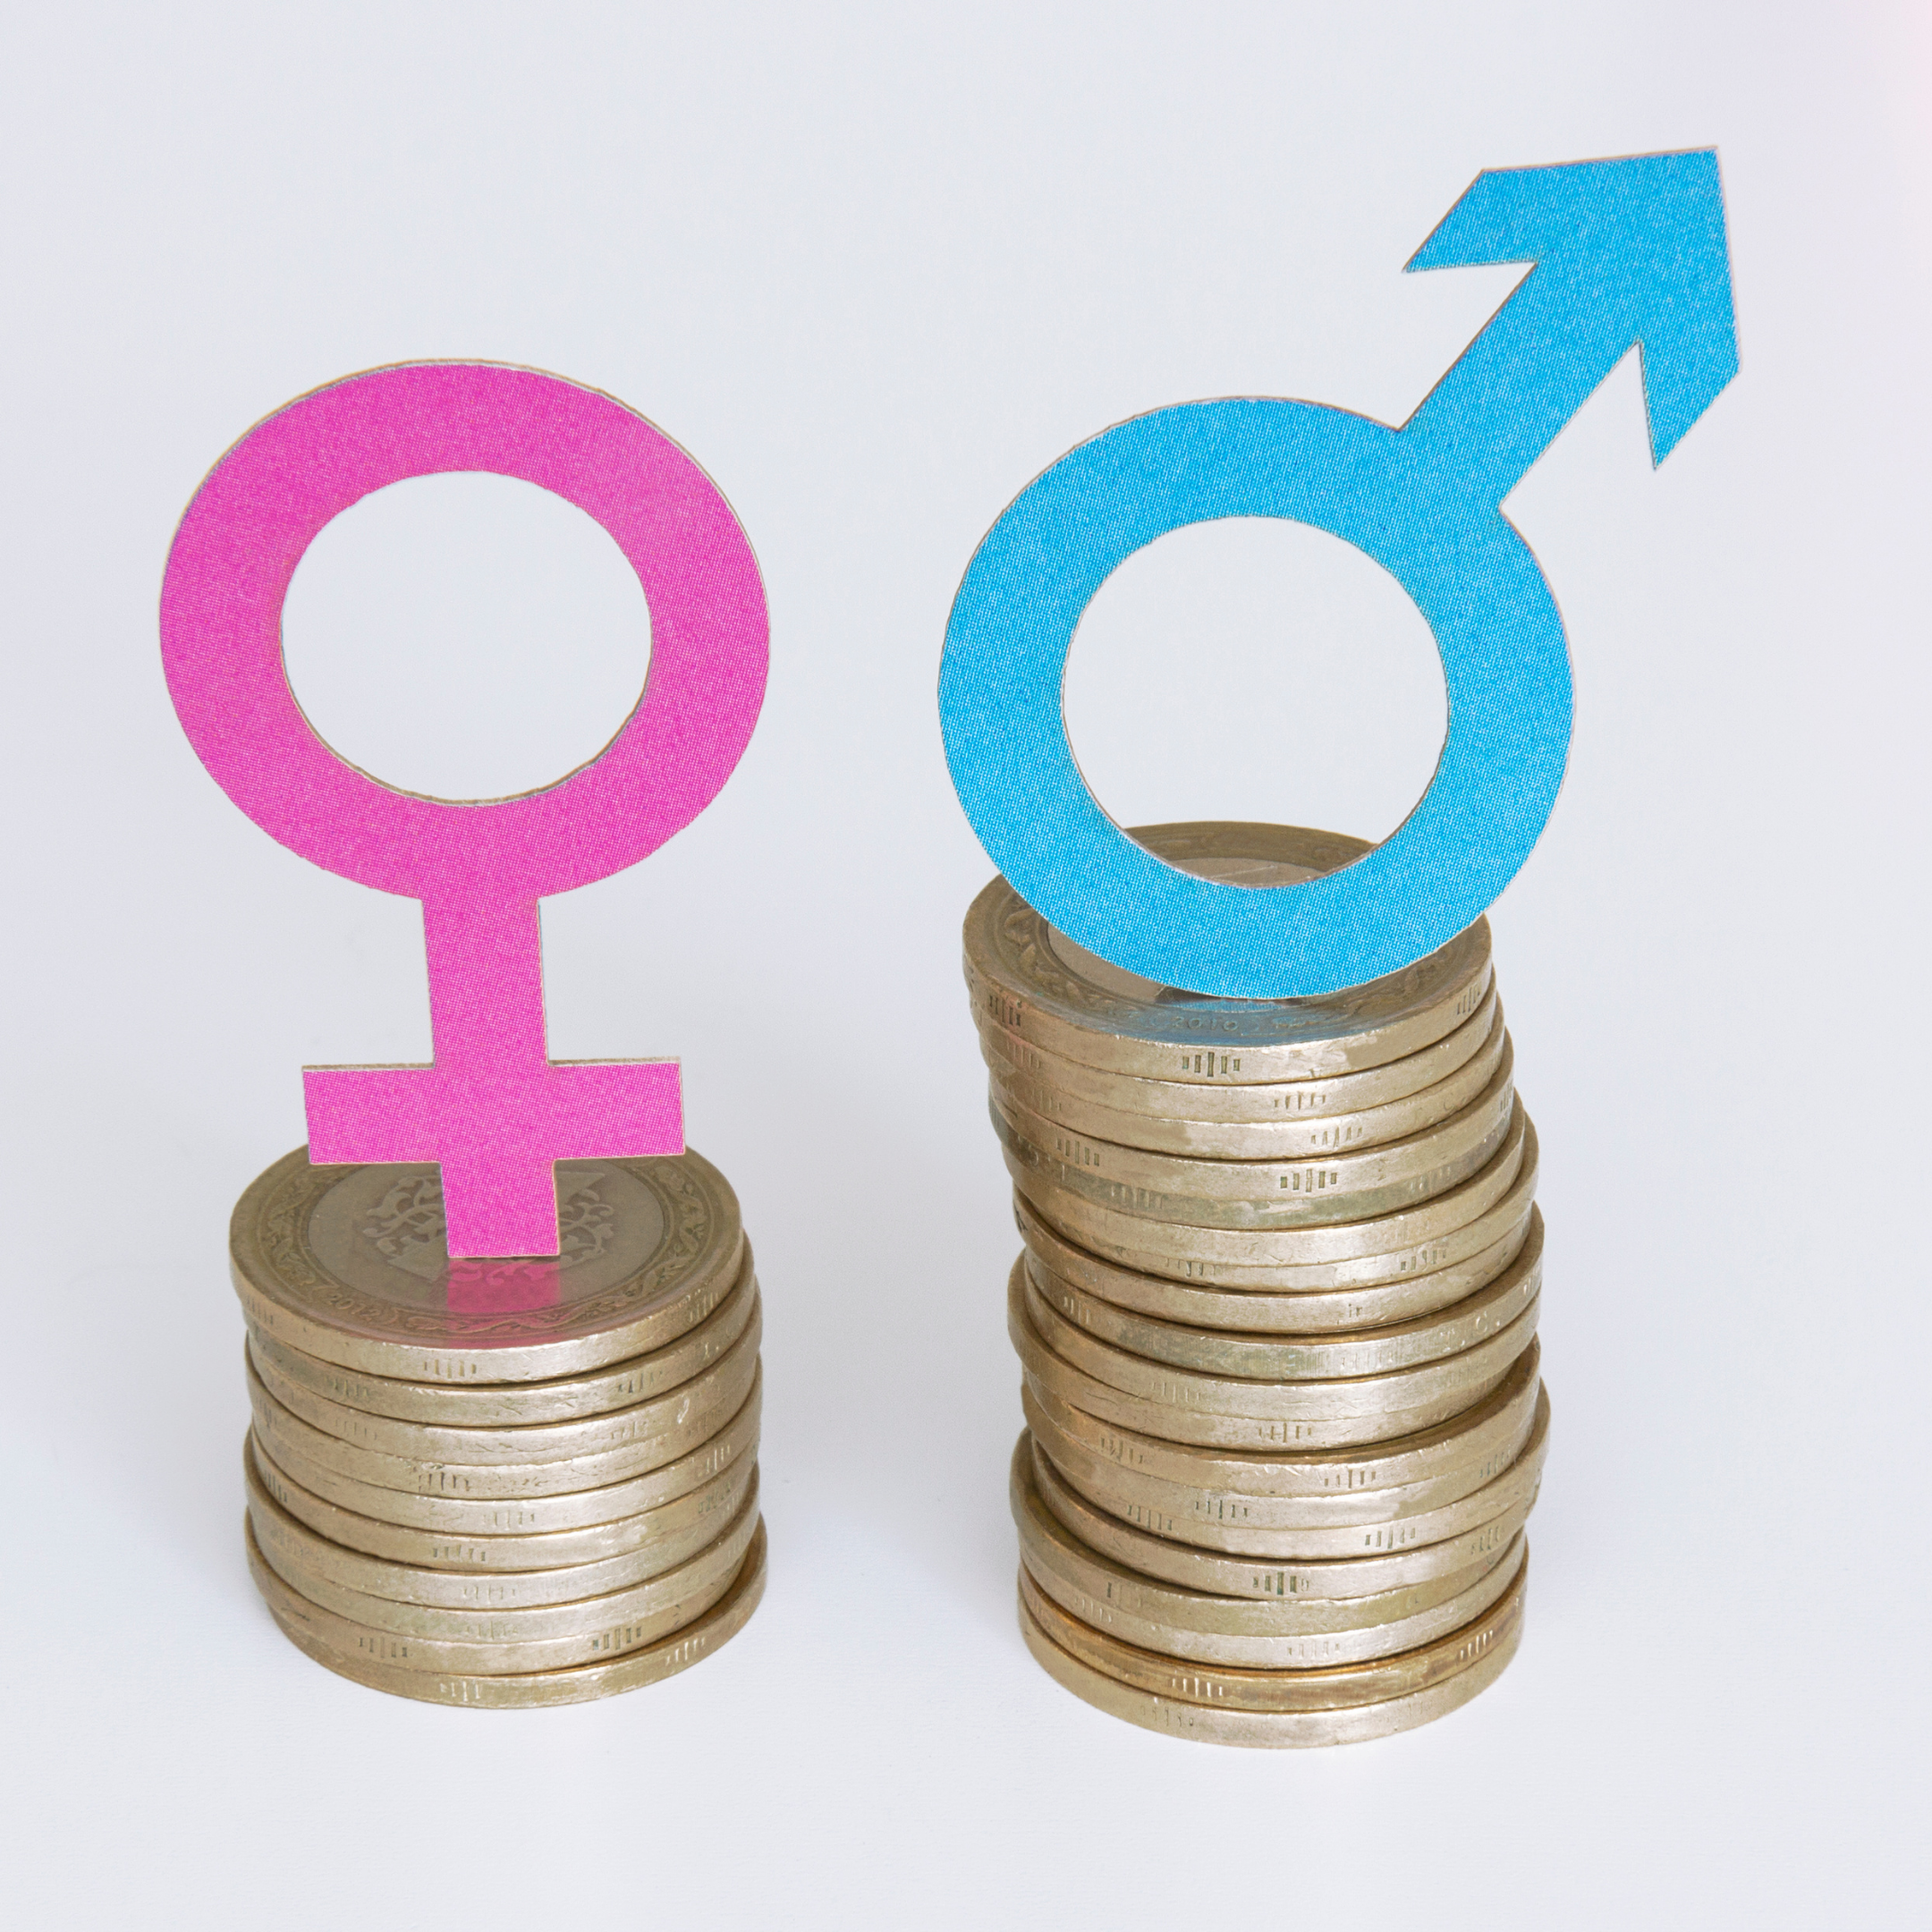 De loonkloof: vrouwen verdienen 5 – 20% minder dan mannen